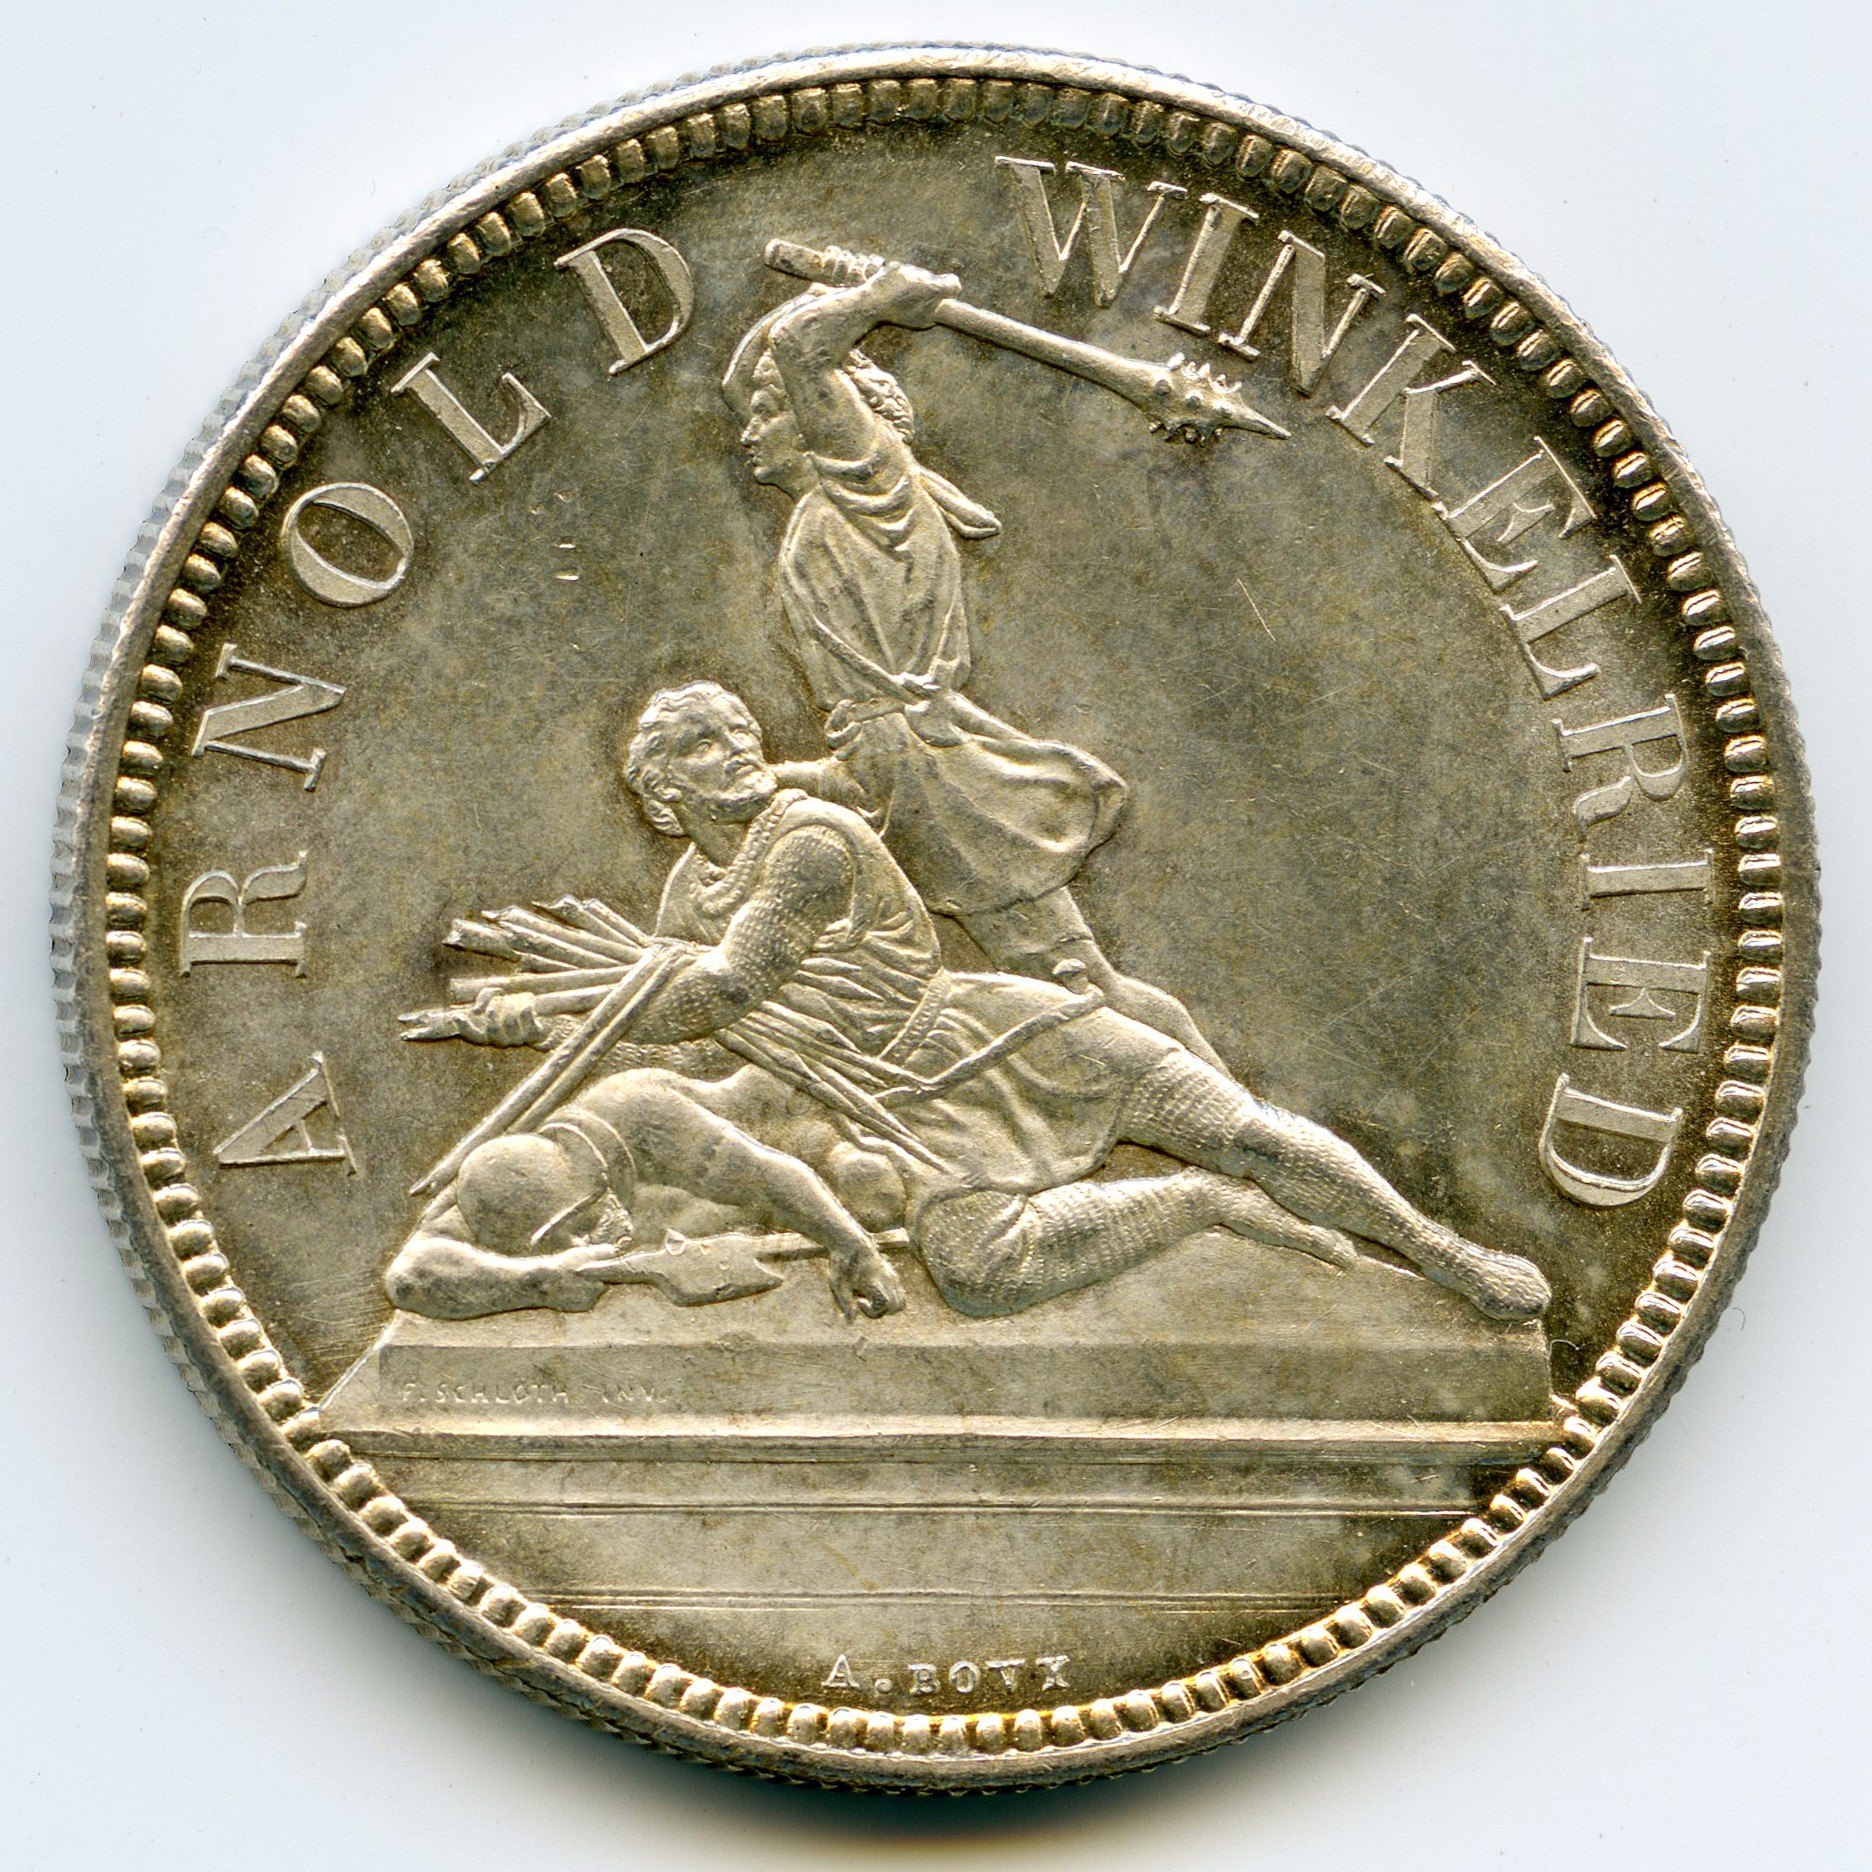 Suisse - 5 Francs - 1861 avers